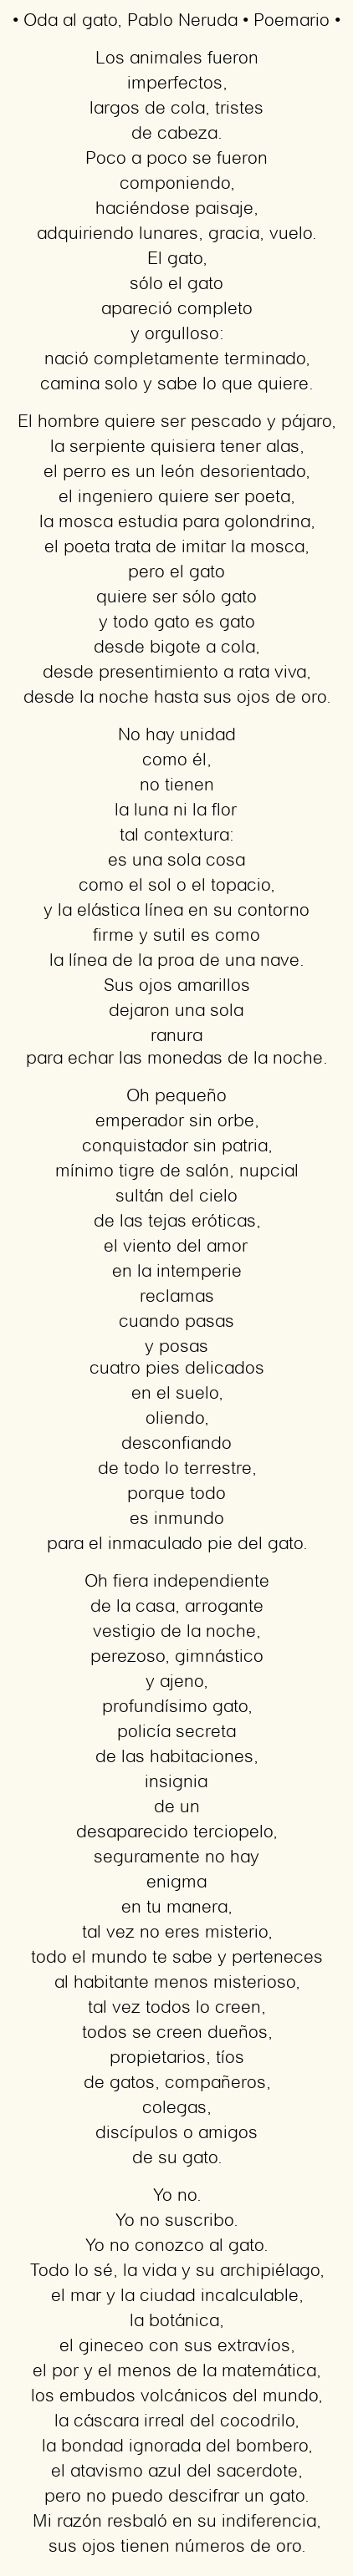 Imagen con el poema Oda al gato, por Pablo Neruda